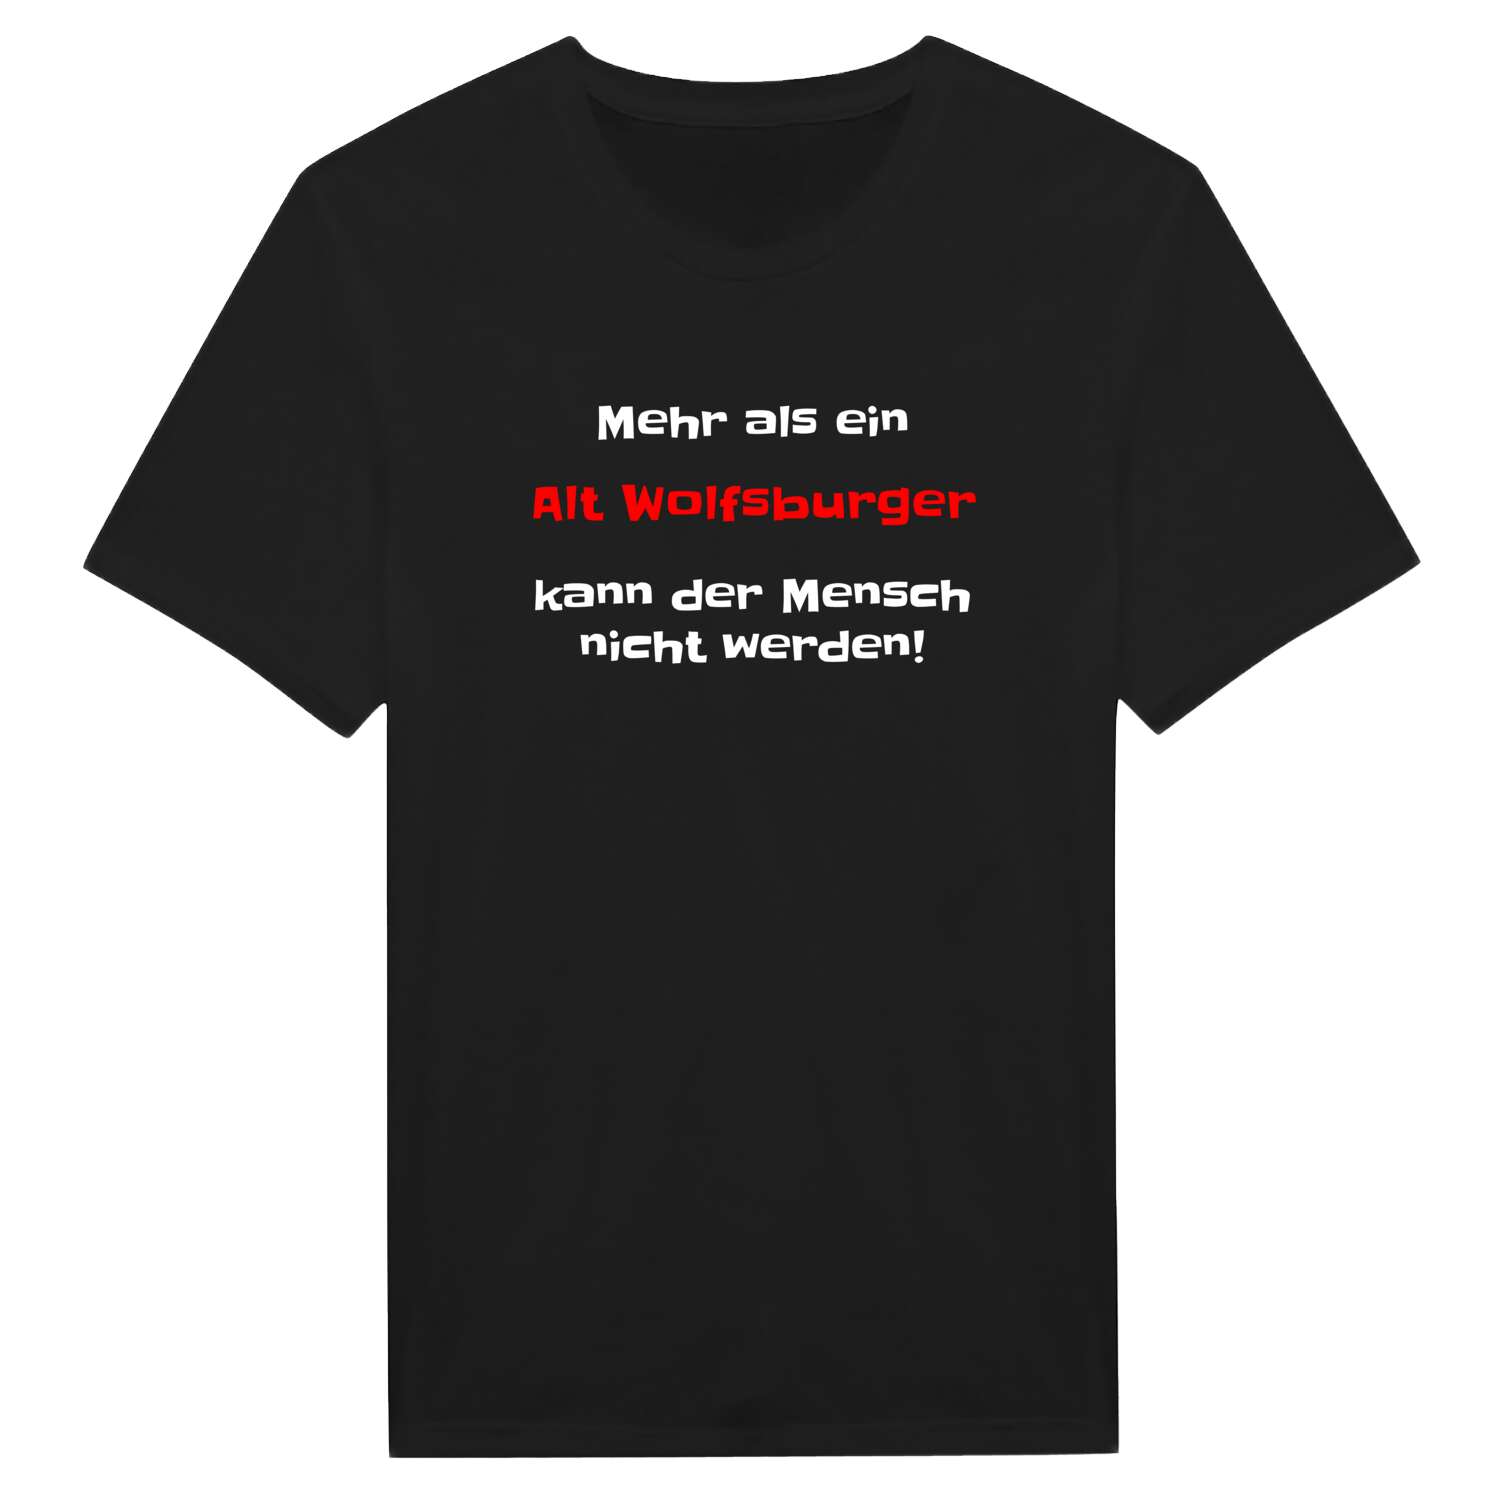 Alt Wolfsburg T-Shirt »Mehr als ein«